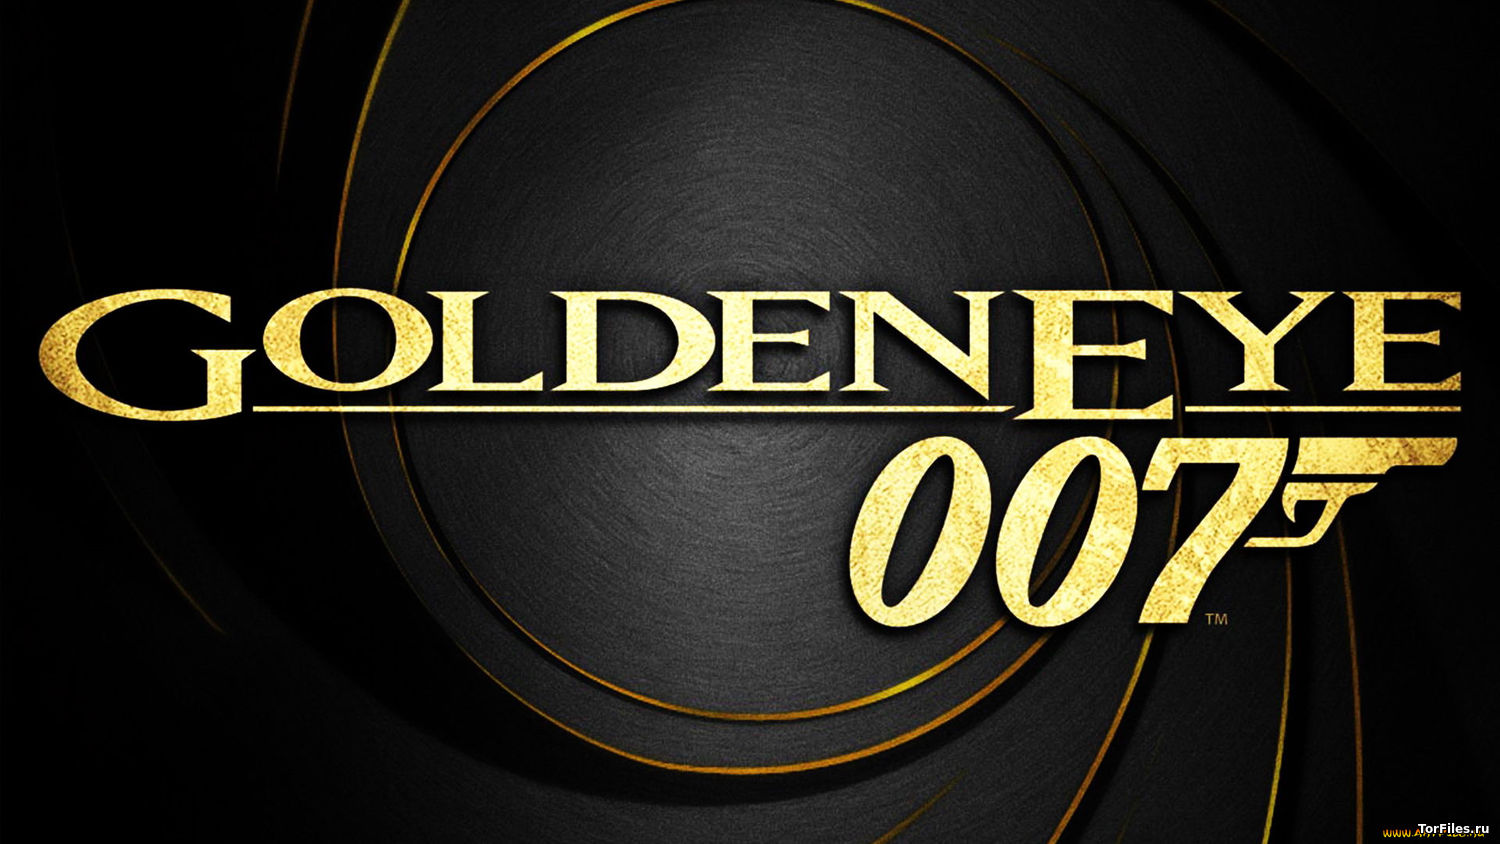 [FREEBOOT] GoldenEye 007 Remastered [XBLA][ENG]